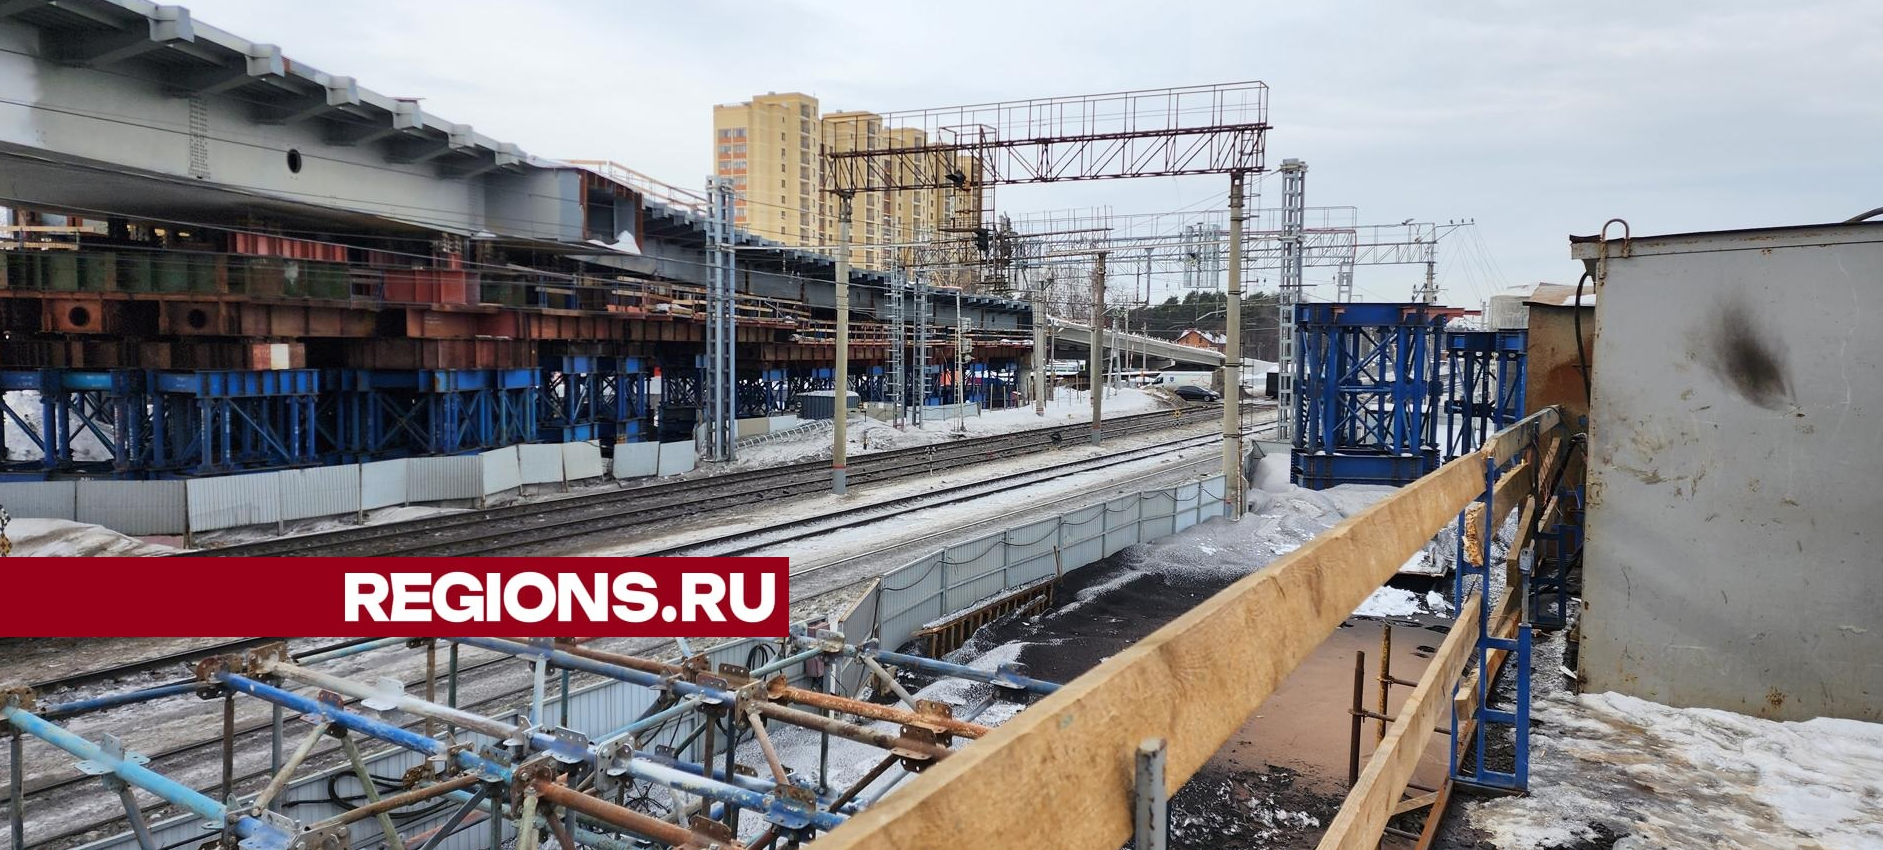 Строительная готовность путепровода через железную дорогу между станциями «Быково» и «Удельная» в Раменском округе - 76 процентов